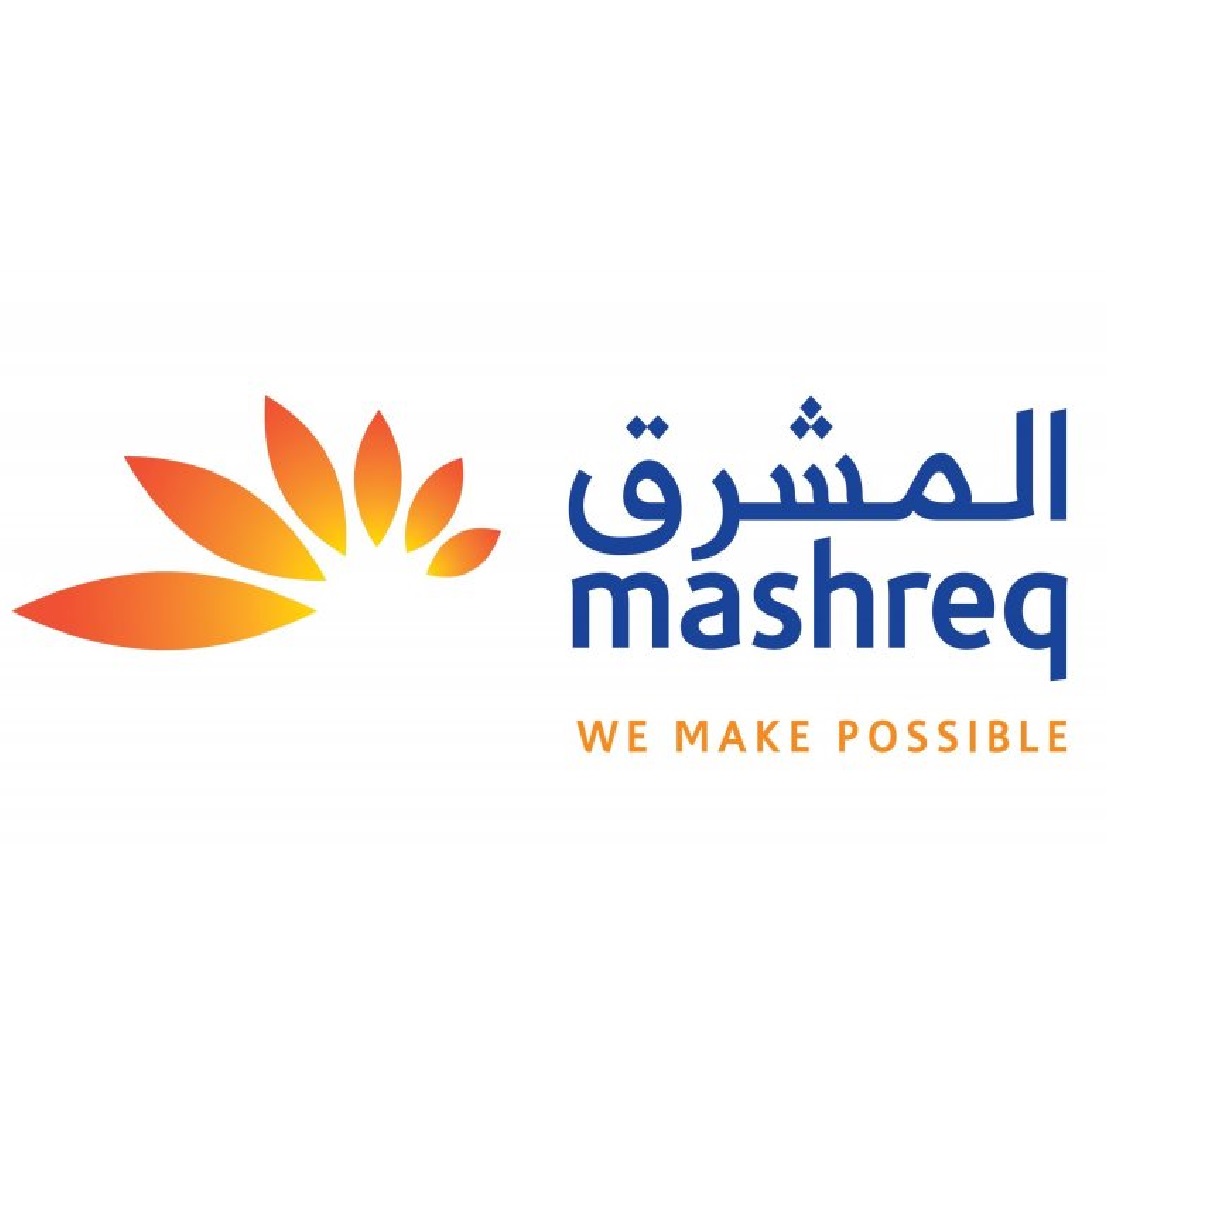 Mashreq Group